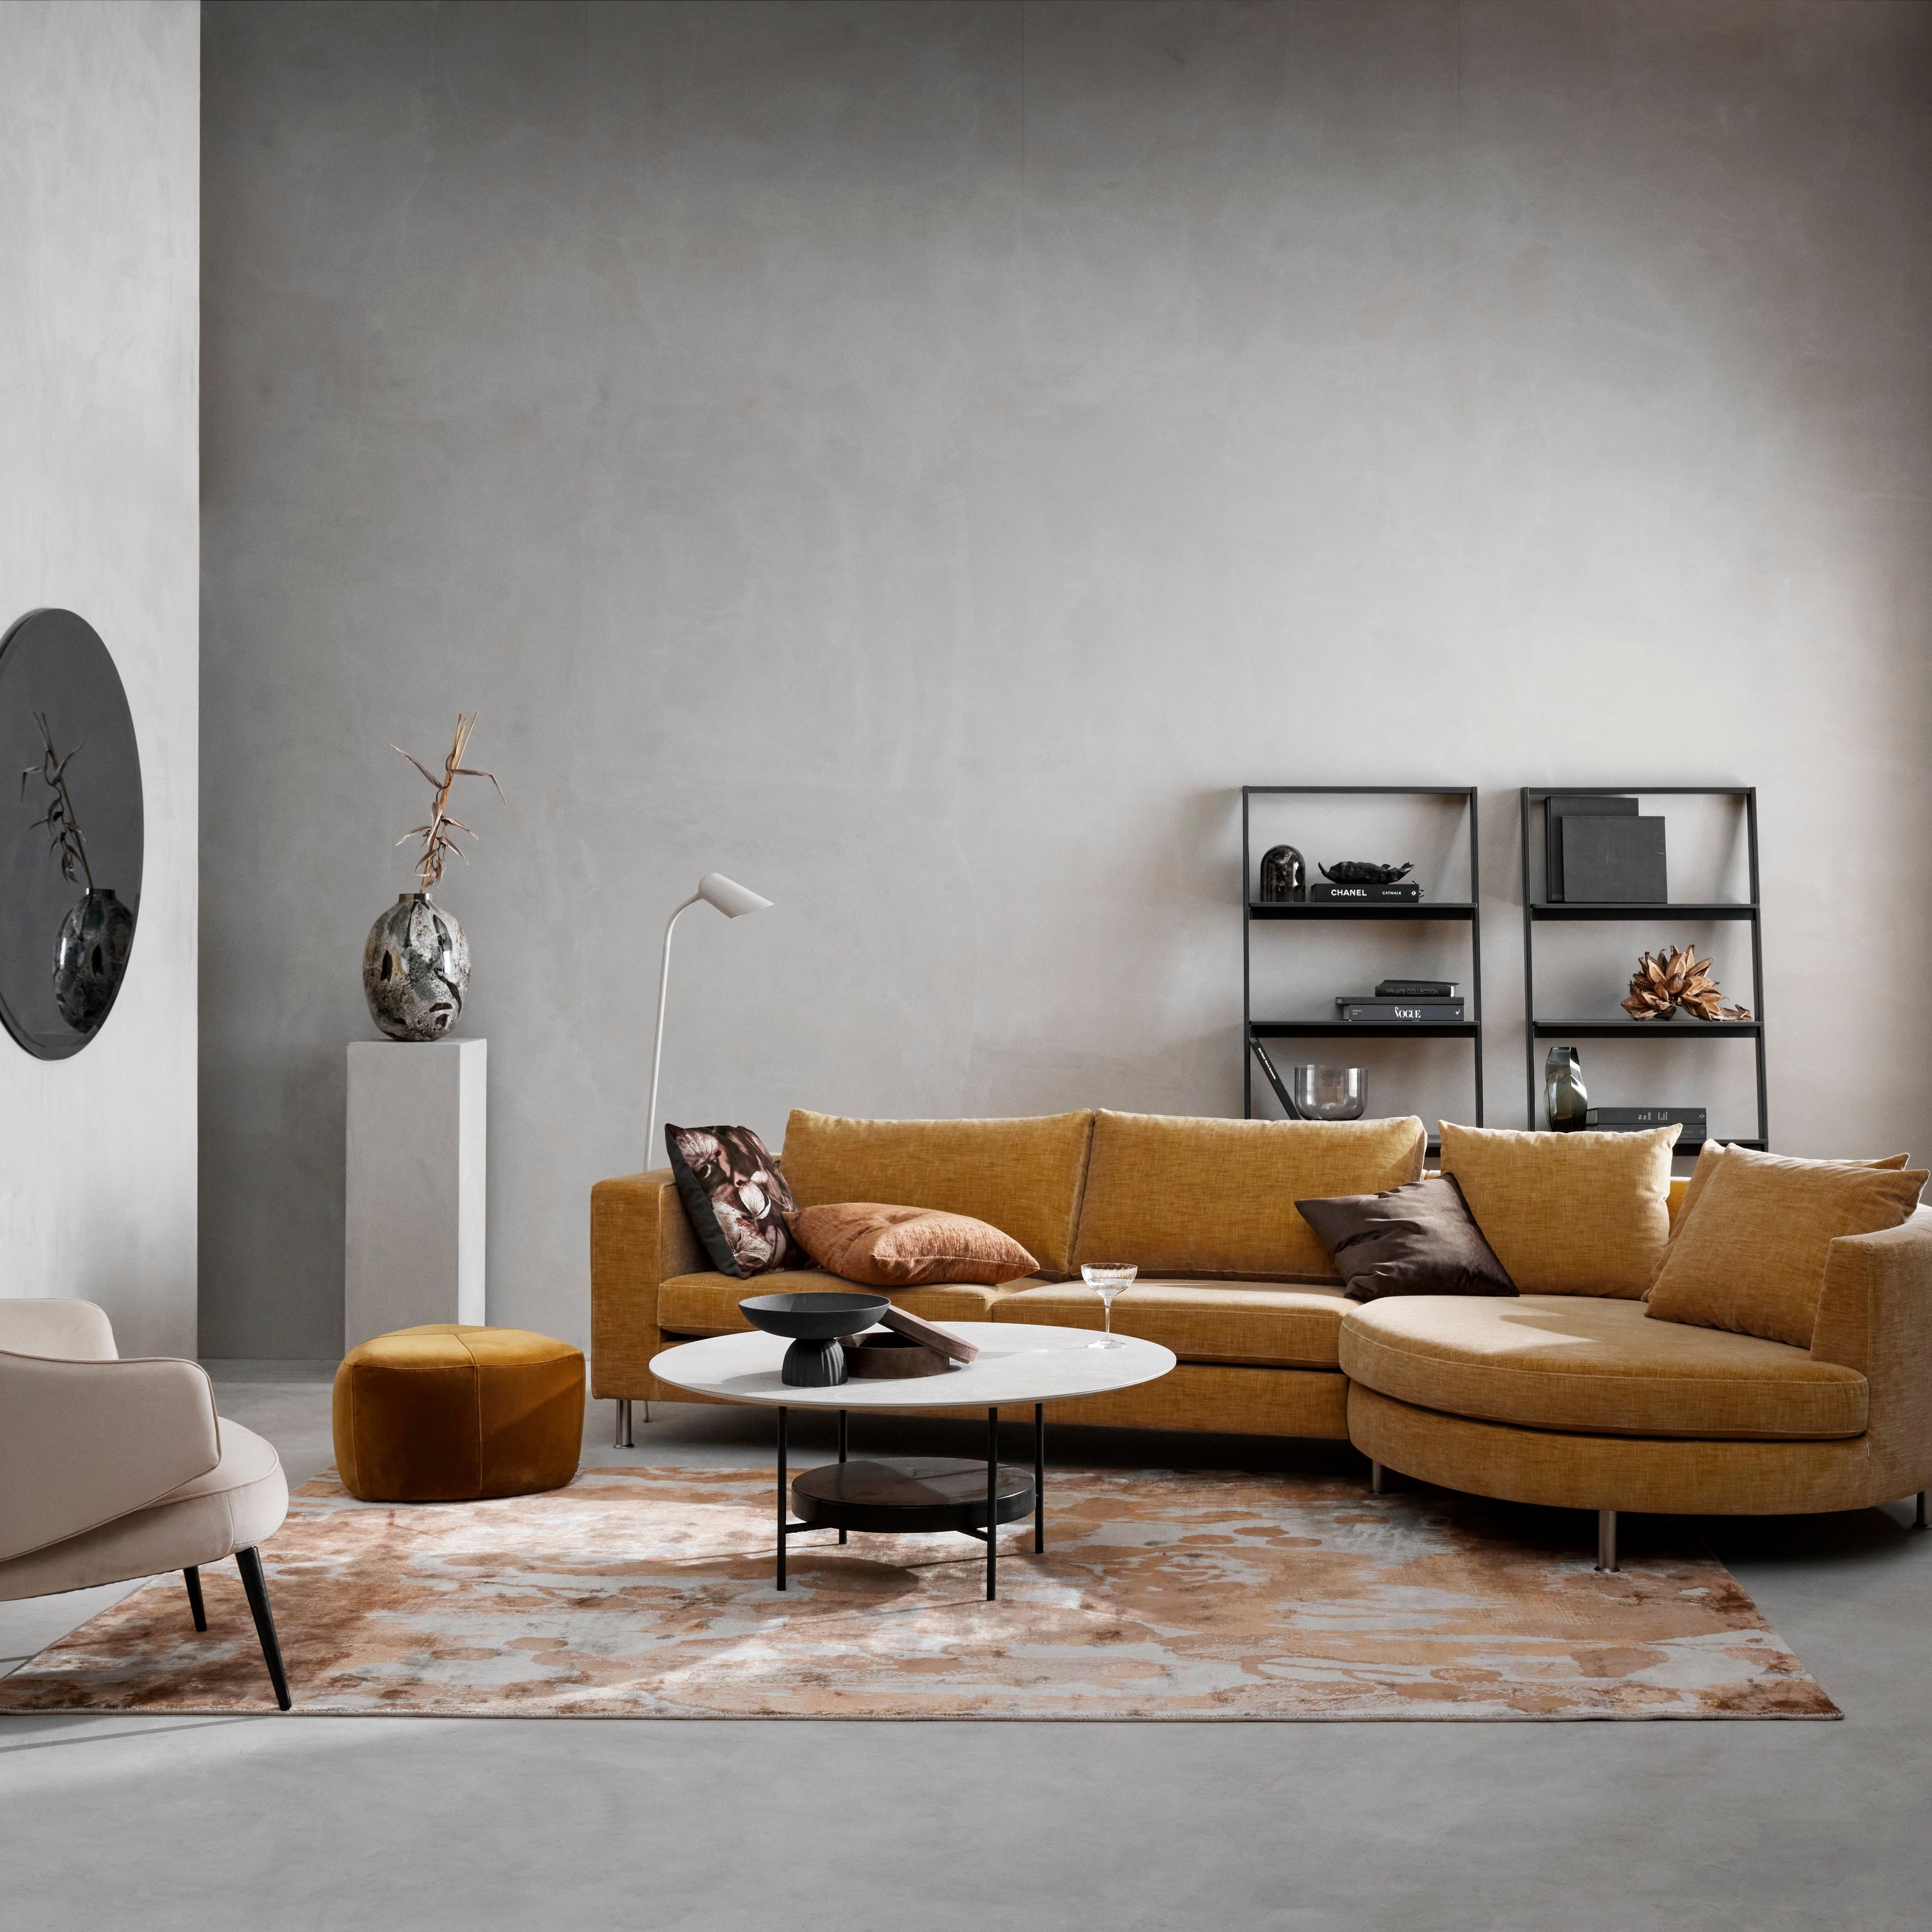 Modernes Wohnzimmer mit Modulsofa in Senfgelb, beigefarbenem Sessel, gemustertem Teppich und minimalistischer Dekoration.